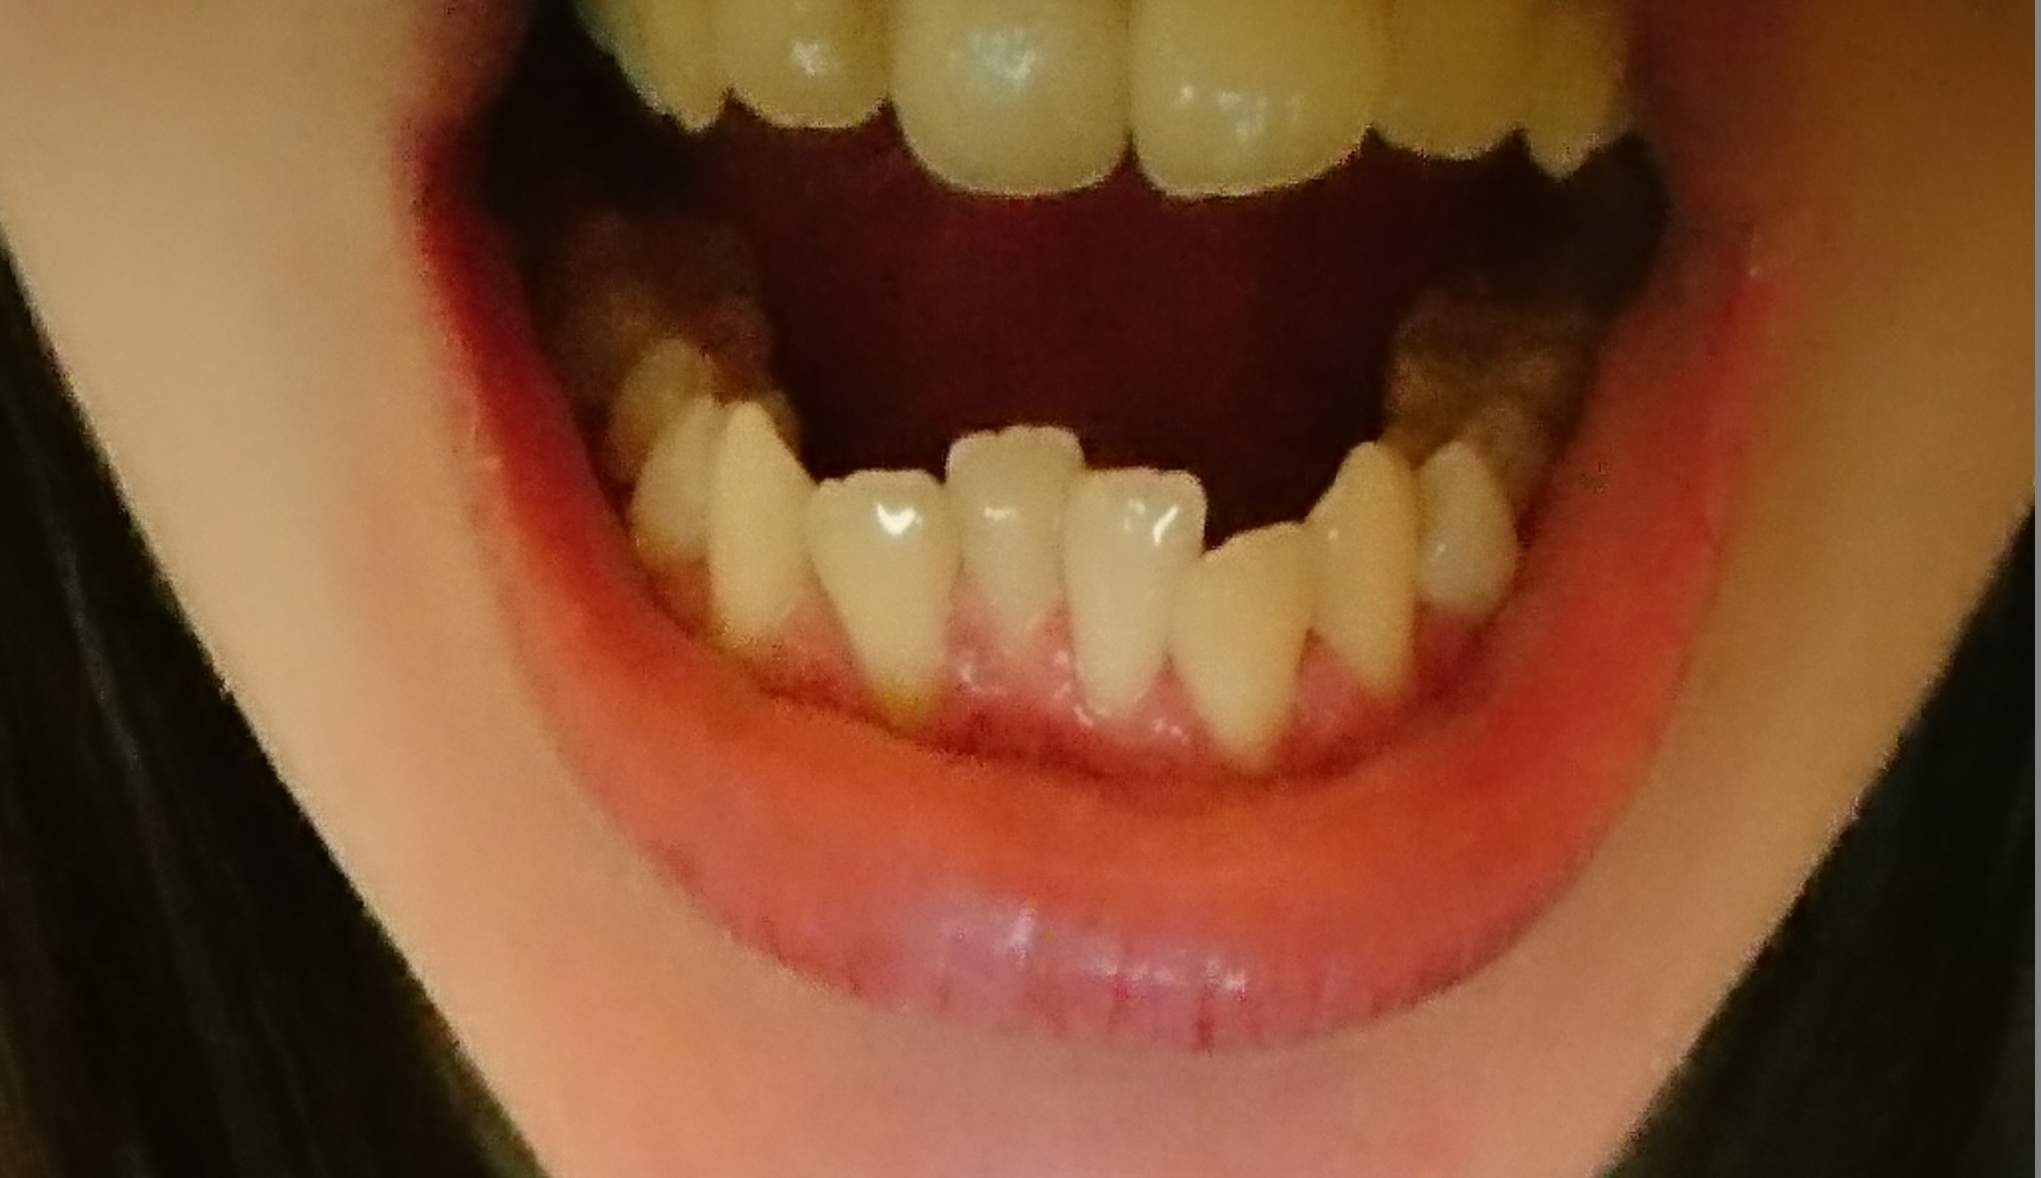 Vorstehende zähne